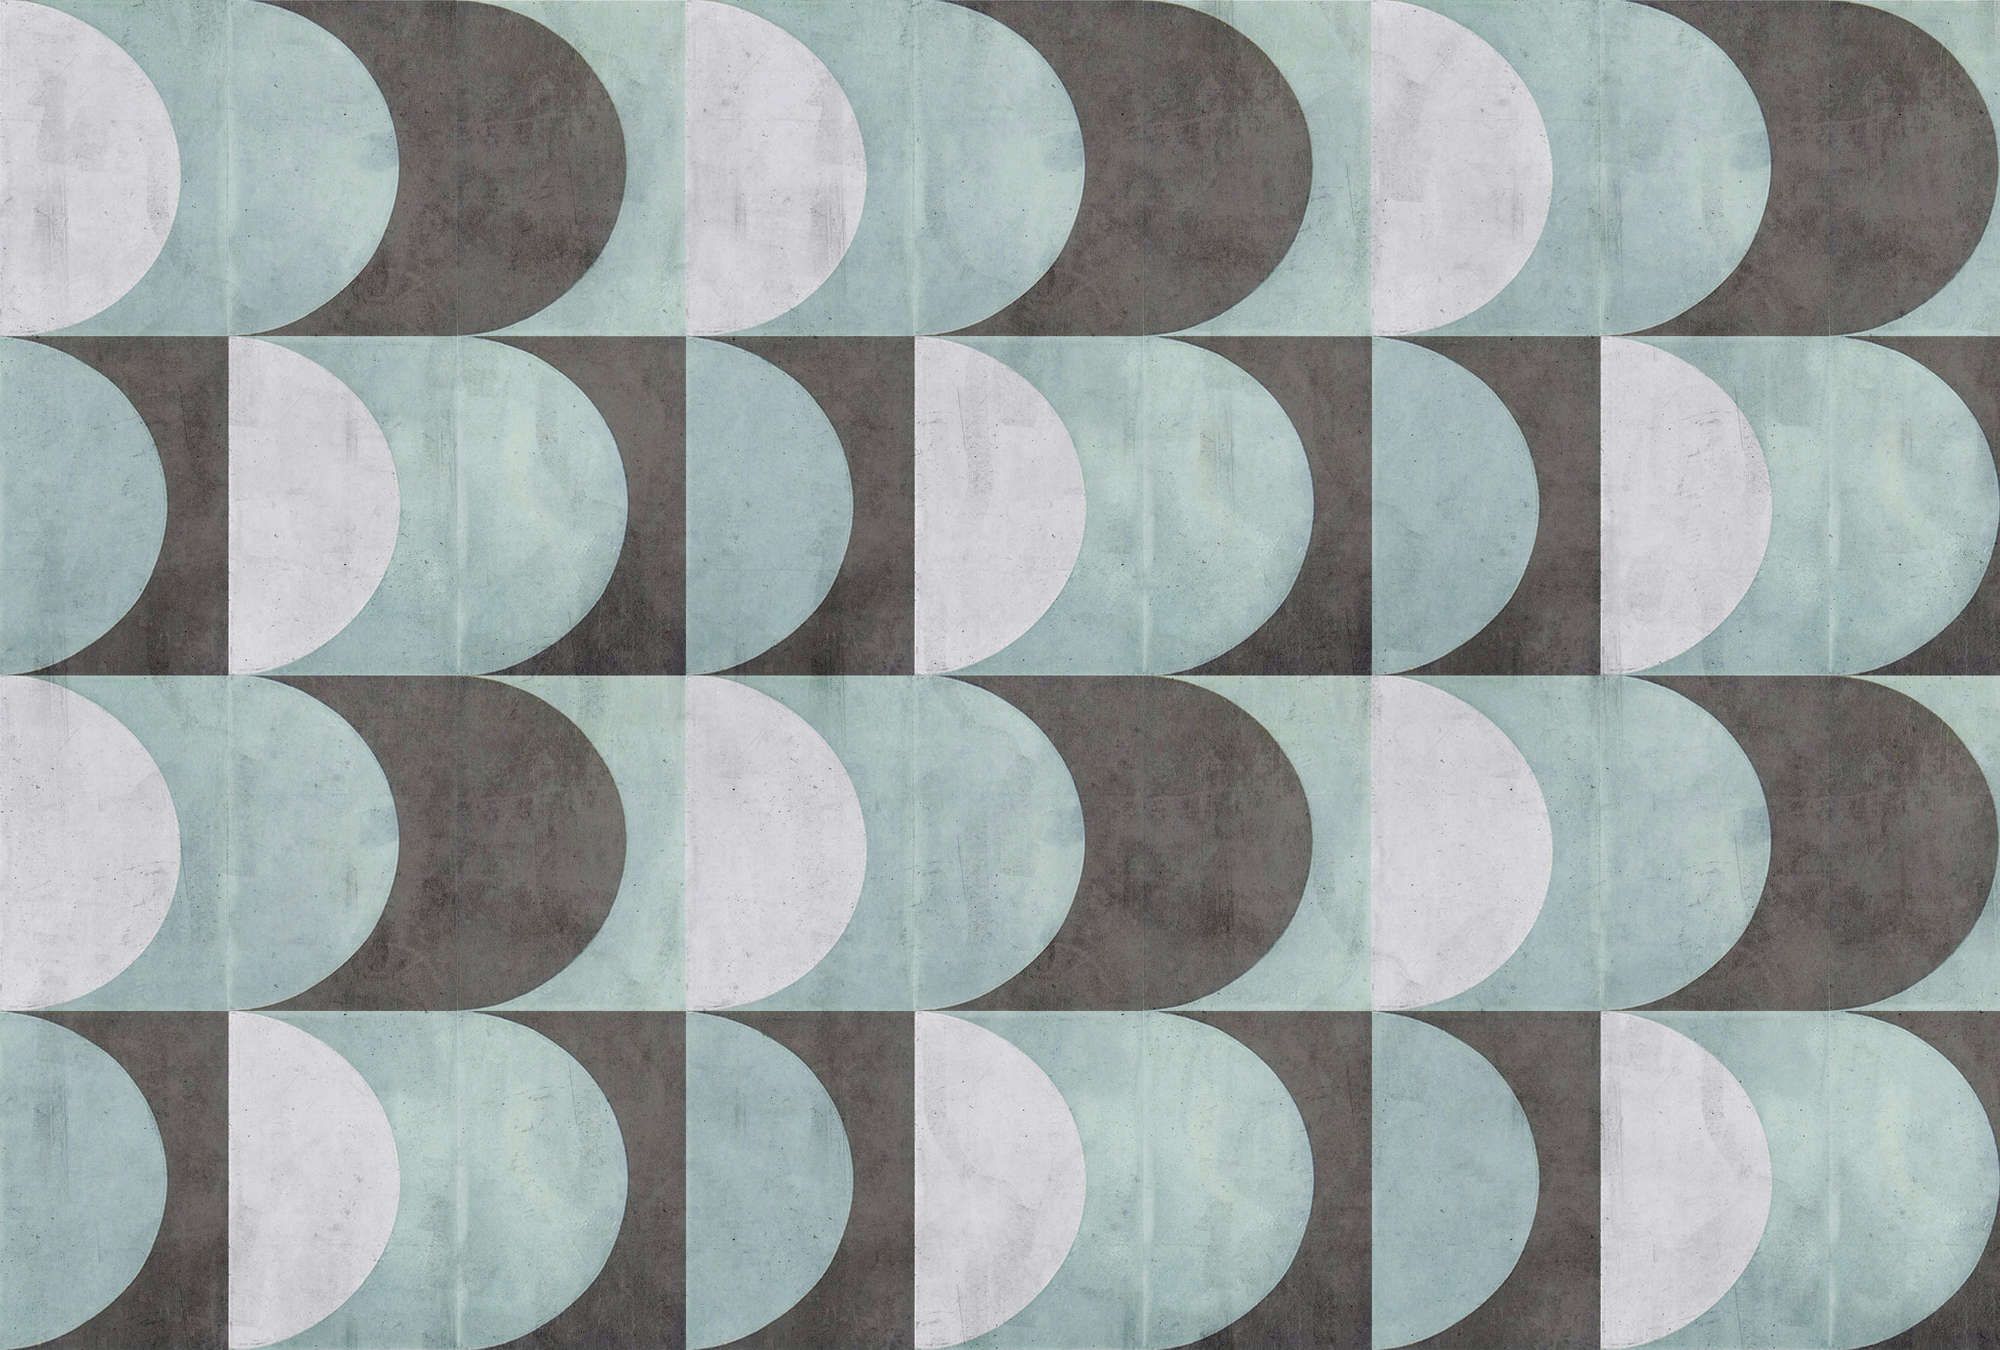             papier peint en papier panoramique »julek 2« - motif rétro imitation béton - vert menthe, gris | Intissé lisse, légèrement nacré
        